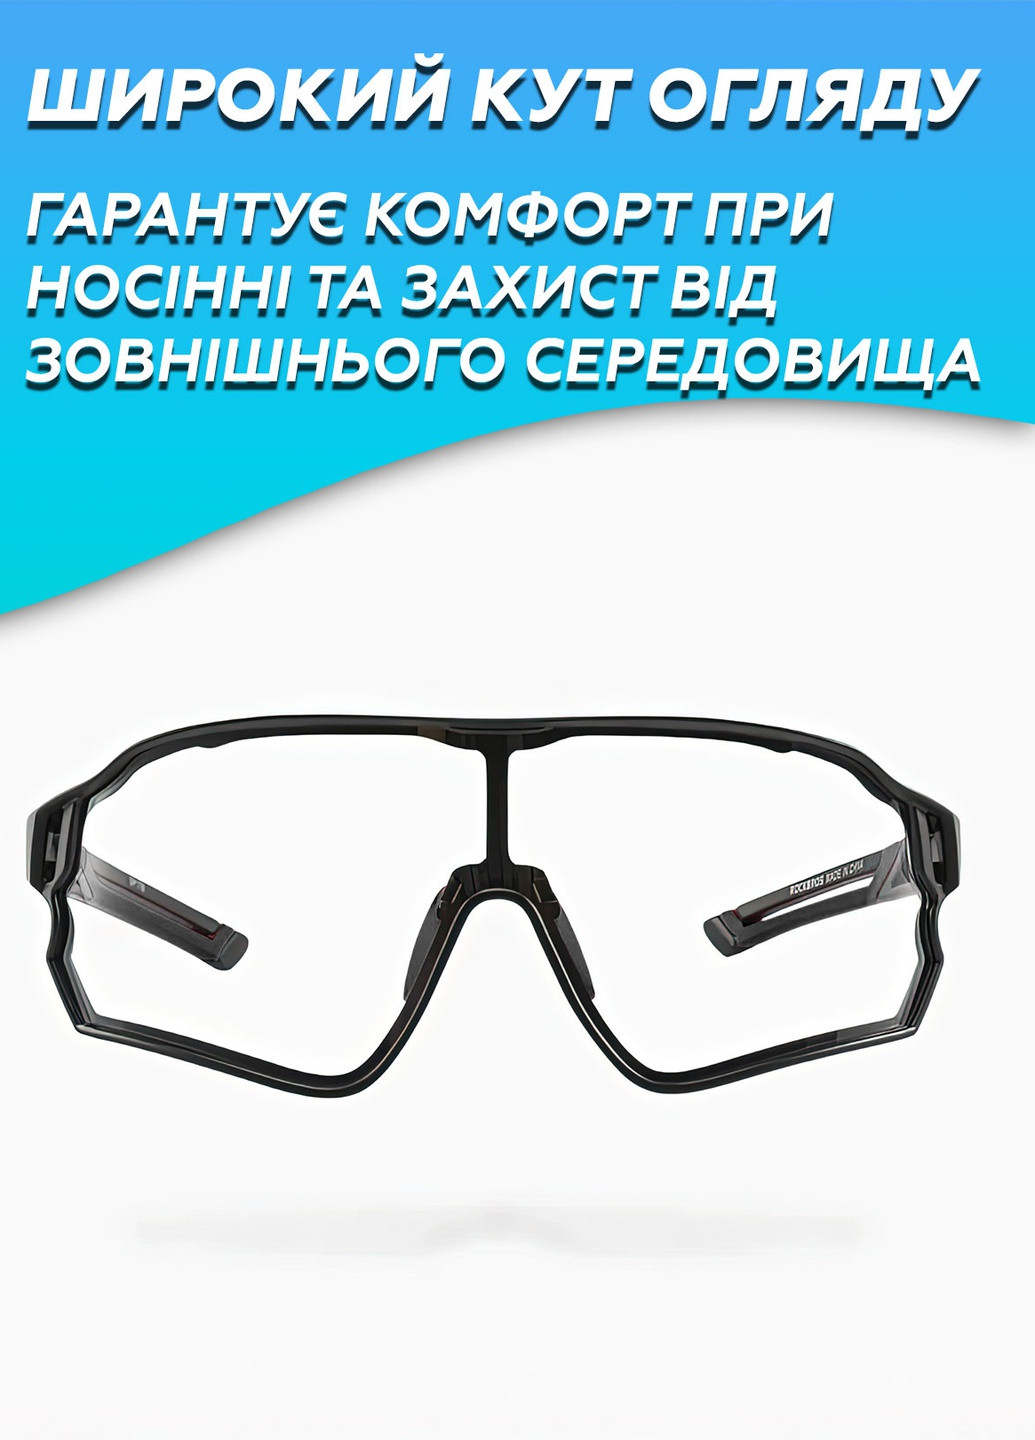 Фотохромні окуляри рокброс / Спортивні велоокуляри для велосипеда для чоловіків і жінок 8719 Чорний 64936 Rockbros (257932472)